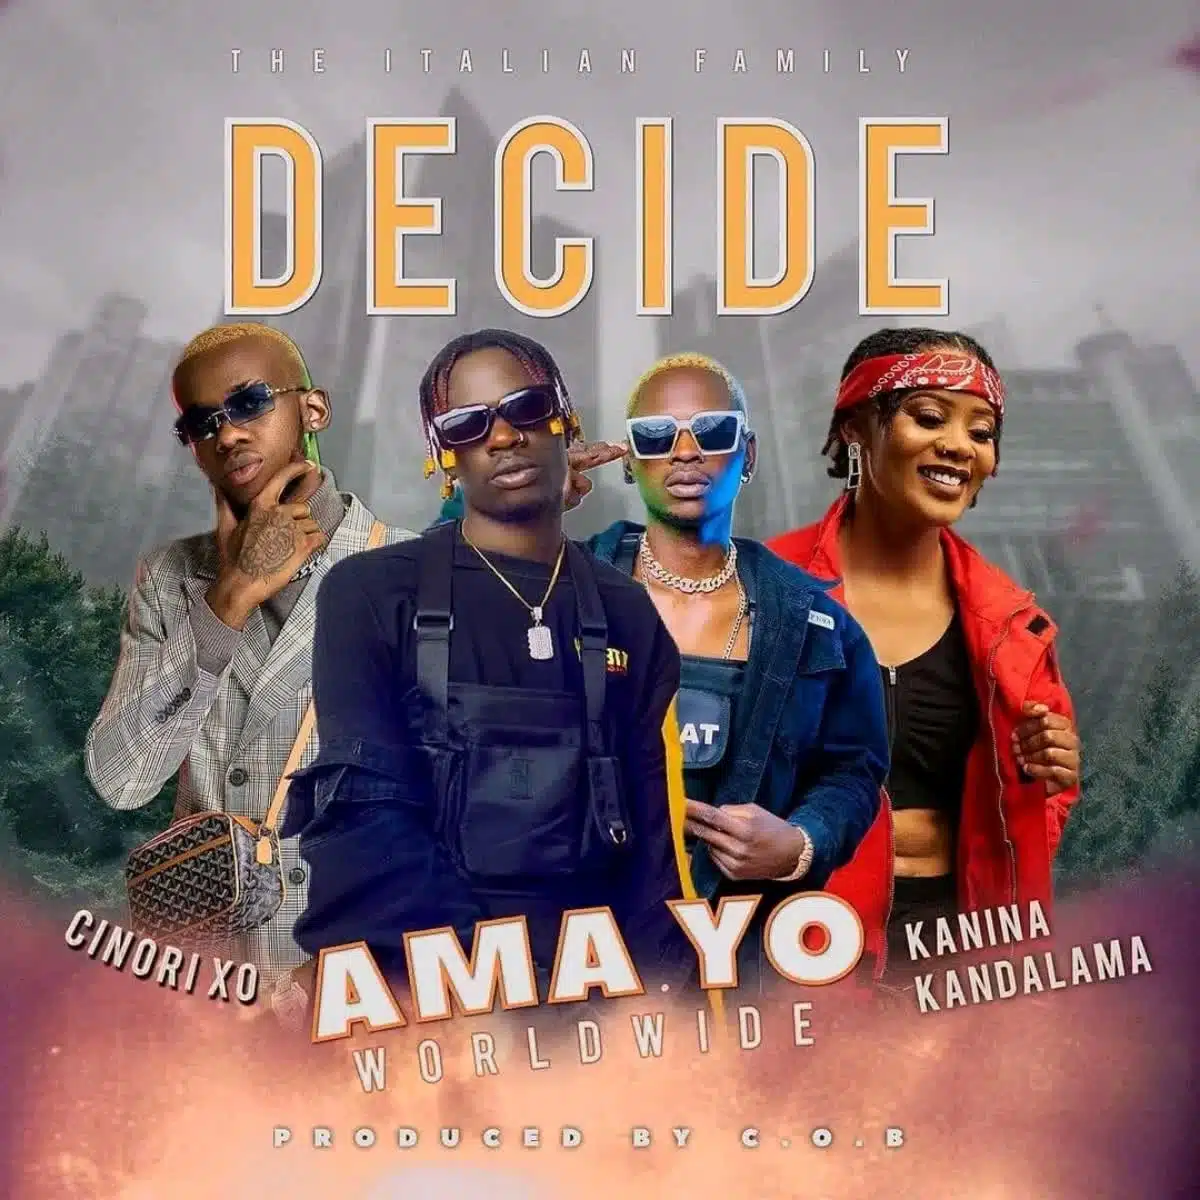 DOWNLOAD: Ama Yo Ft. Cinori Xo & Kanina Kandalama – “Decide” Mp3